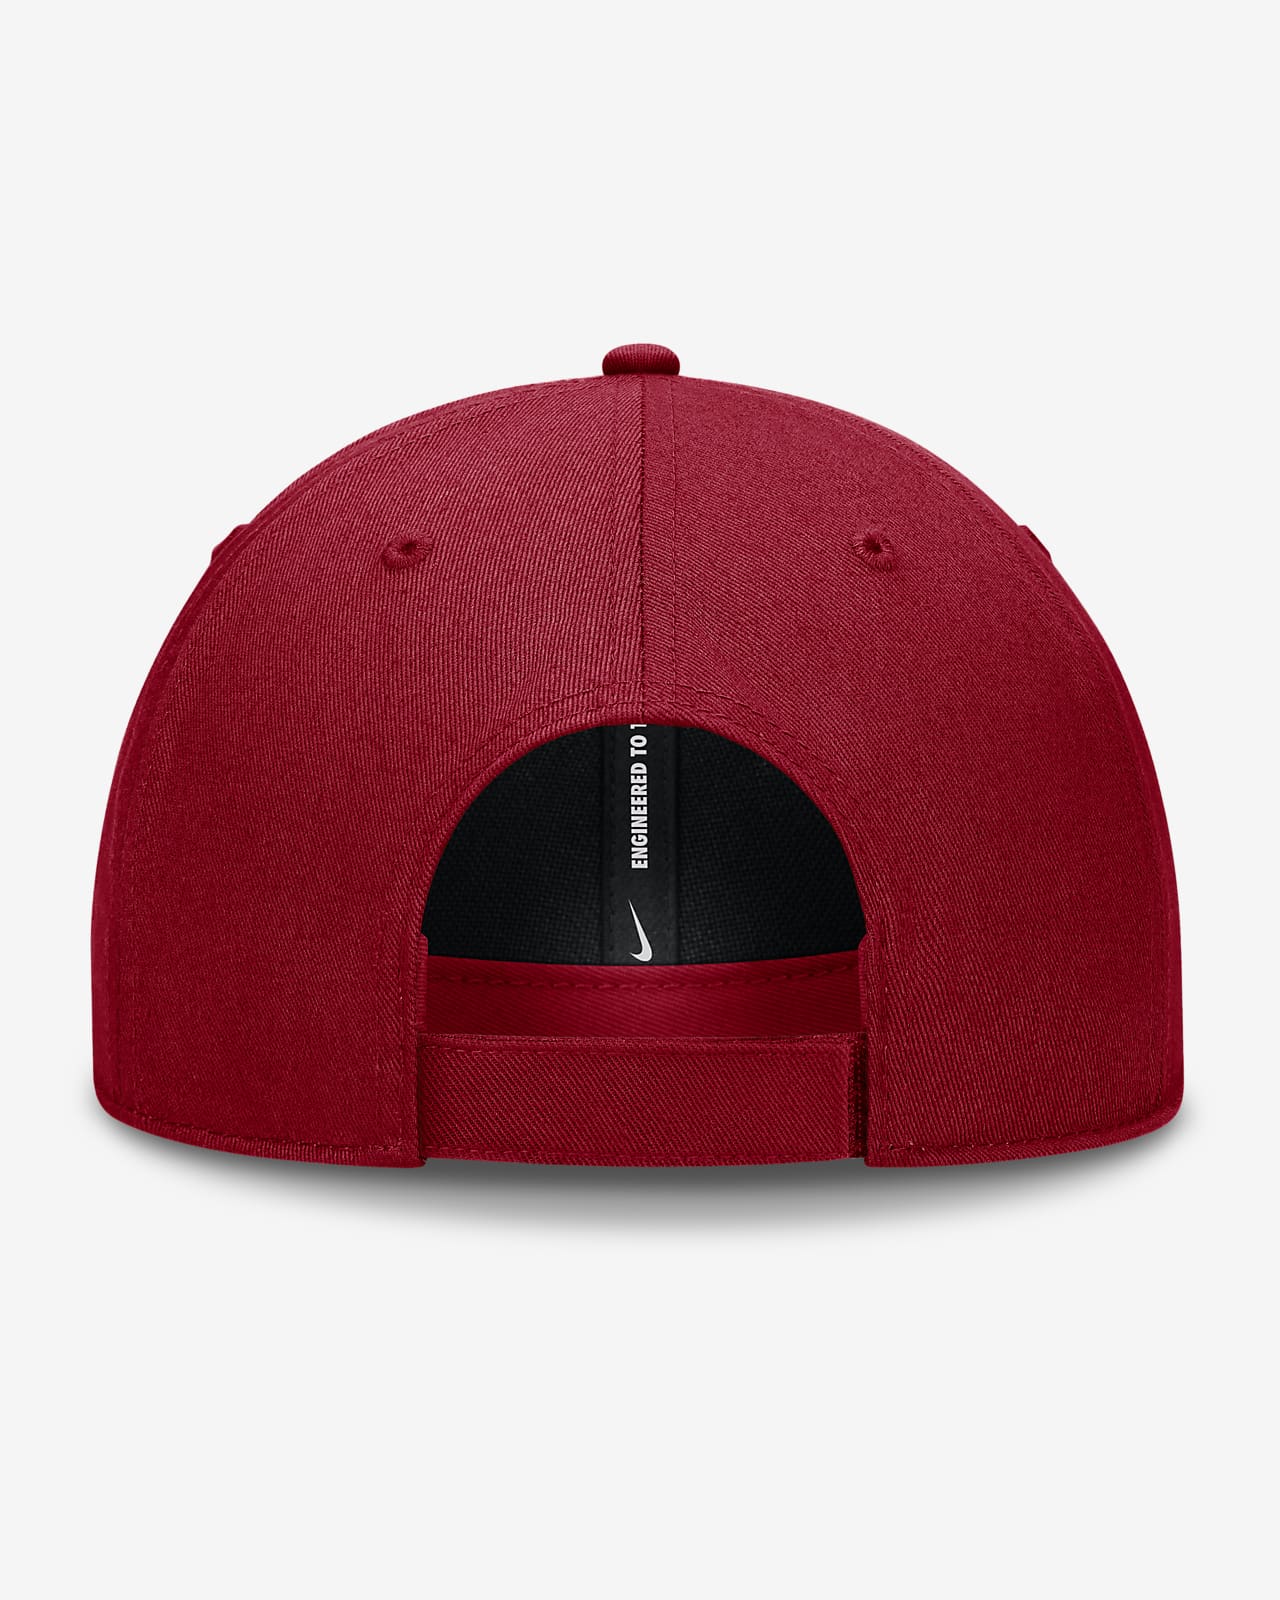 St. Louis Cardinals Evergreen Club Men's Nike Dri-FIT MLB Adjustable Hat